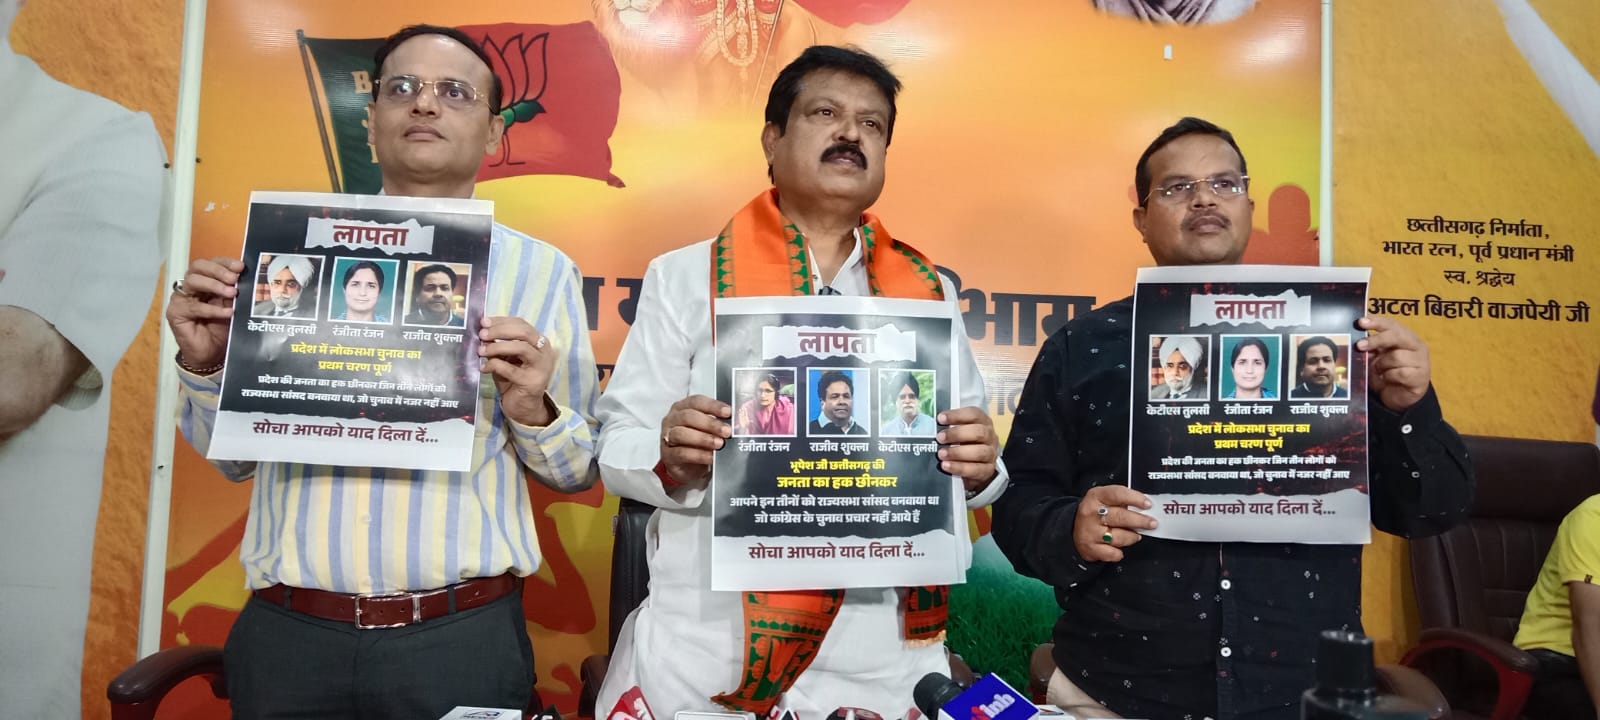 भाजपा ने कांग्रेस के तीन सांसदों का लापता पोस्टर जारी किया, पूछा-प्रथमचरण का
मतदान हो गया कहां तीनों सांसद